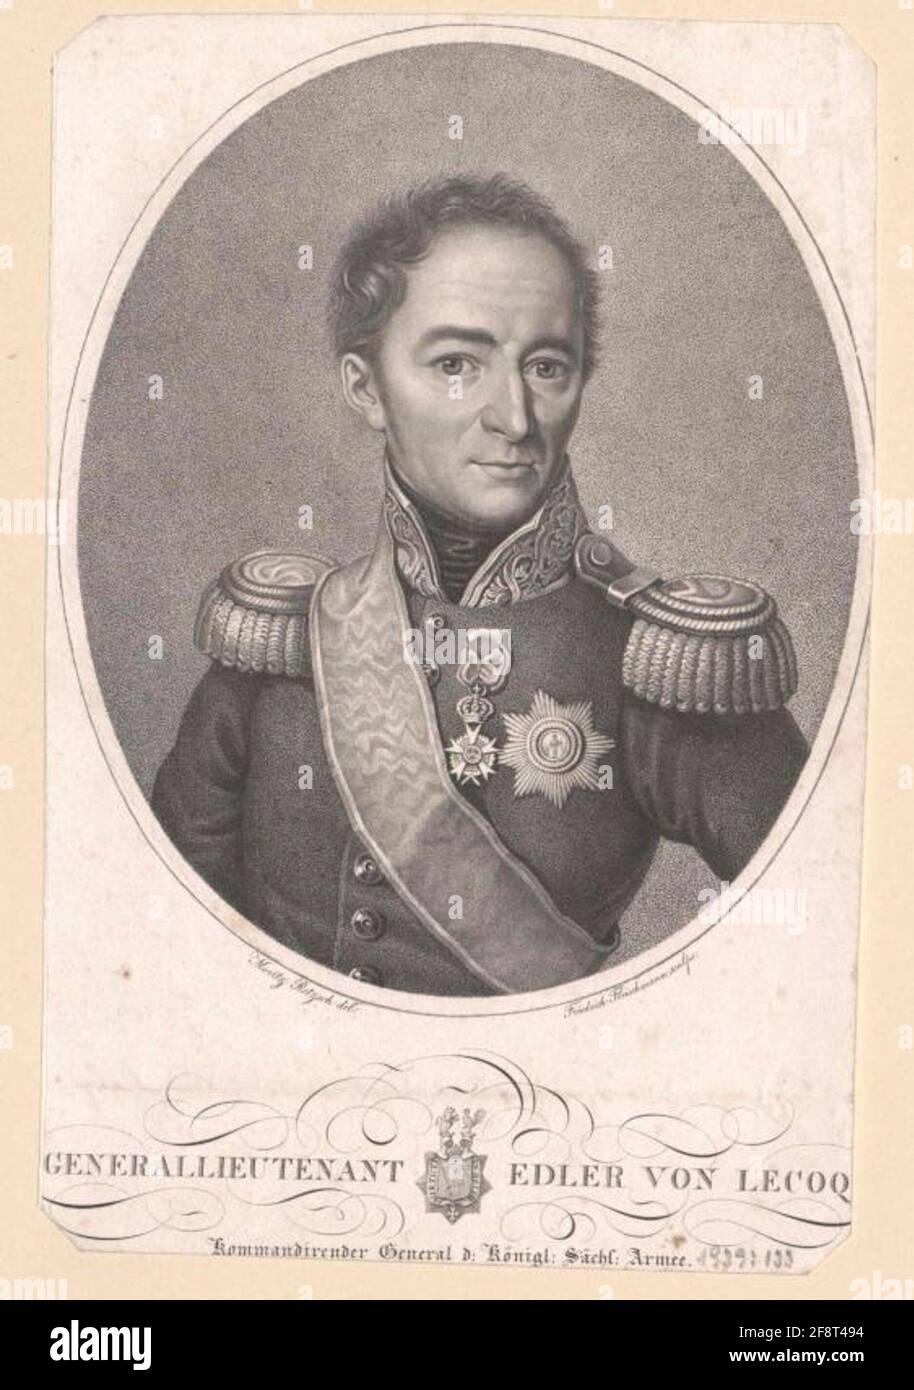 Саксонский генерал фон Ле Кок Карл